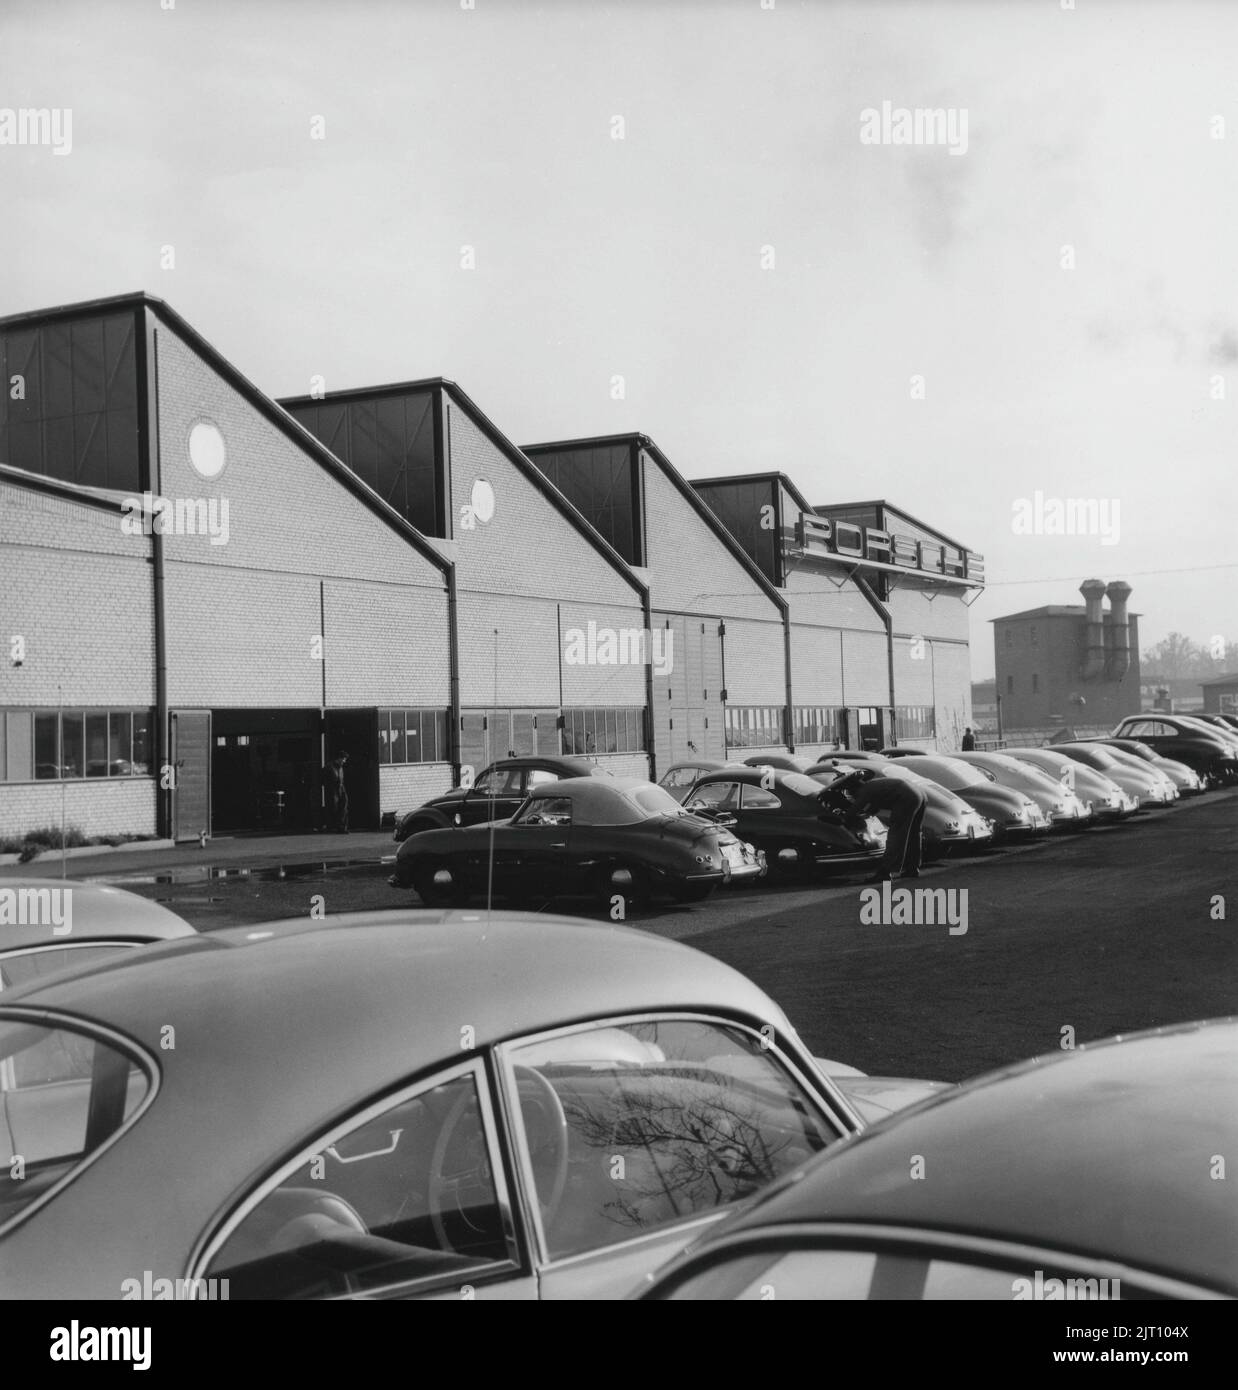 Storia Porsche. Una rara vista della fabbrica di automobili Porsche a Stoccarda in Germania negli anni '1950s. Nei locali della fabbrica le vetture Porsche sono visibili in diverse fasi di produzione. L'emblema di Porsche è visto nell'edificio della fabbrica. 1951. Foto Stock